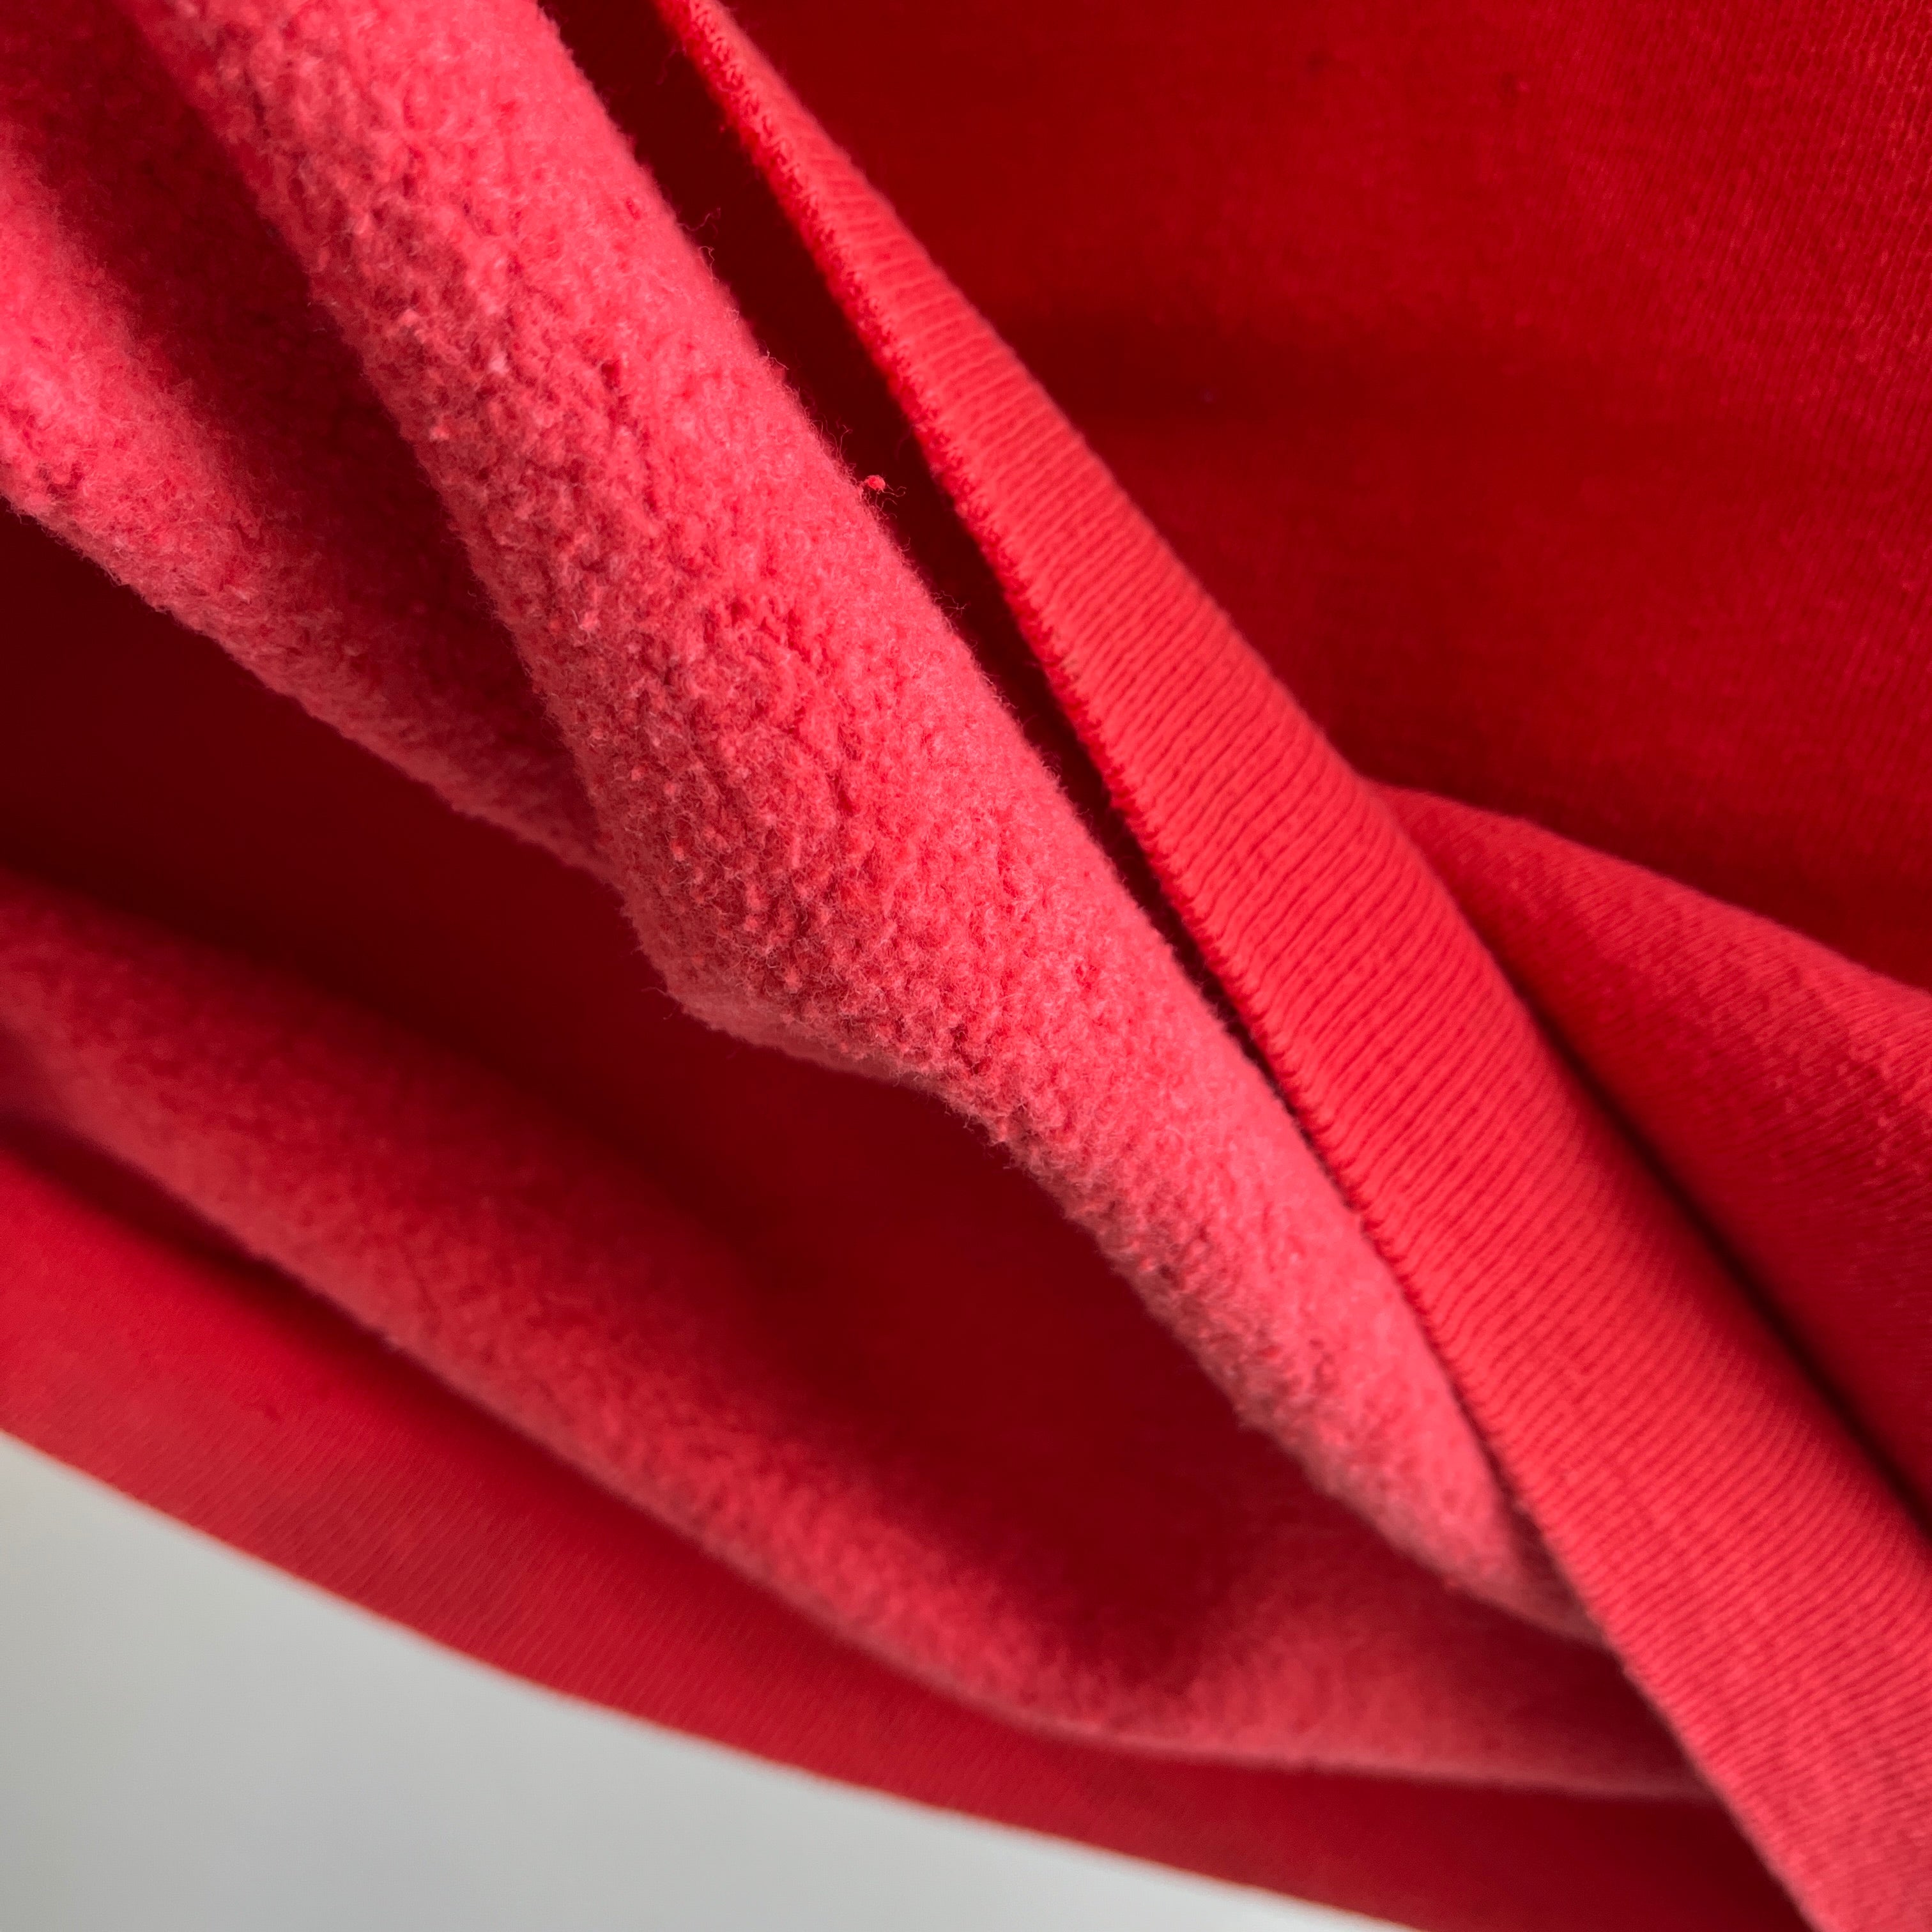 Sweat-shirt rouge délavé structuré des années 1980, principalement en coton, gilet d'échauffement - OUI S'IL VOUS PLAÎT !